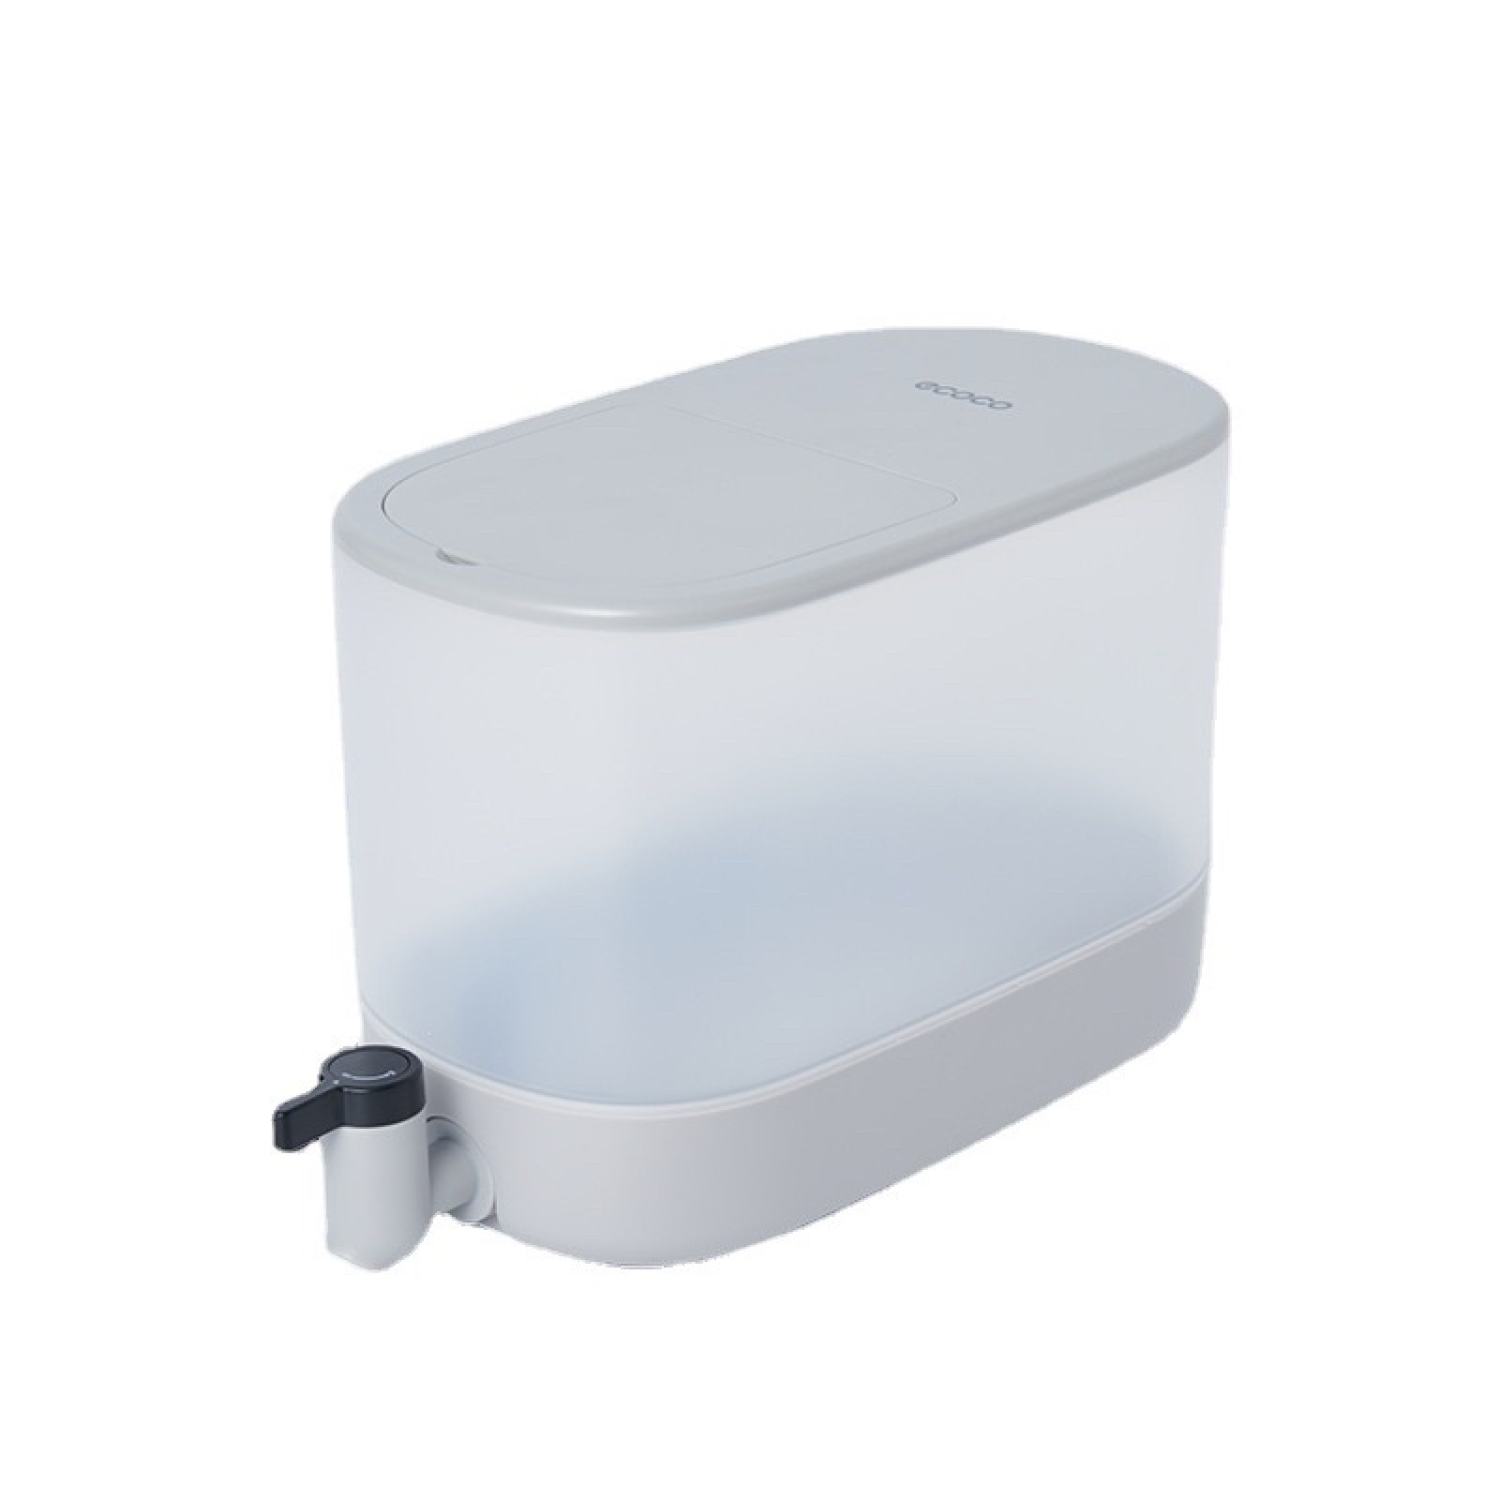 Bình nước tủ lạnh ECOCO 4L có vòi chịu nhiệt độ cao